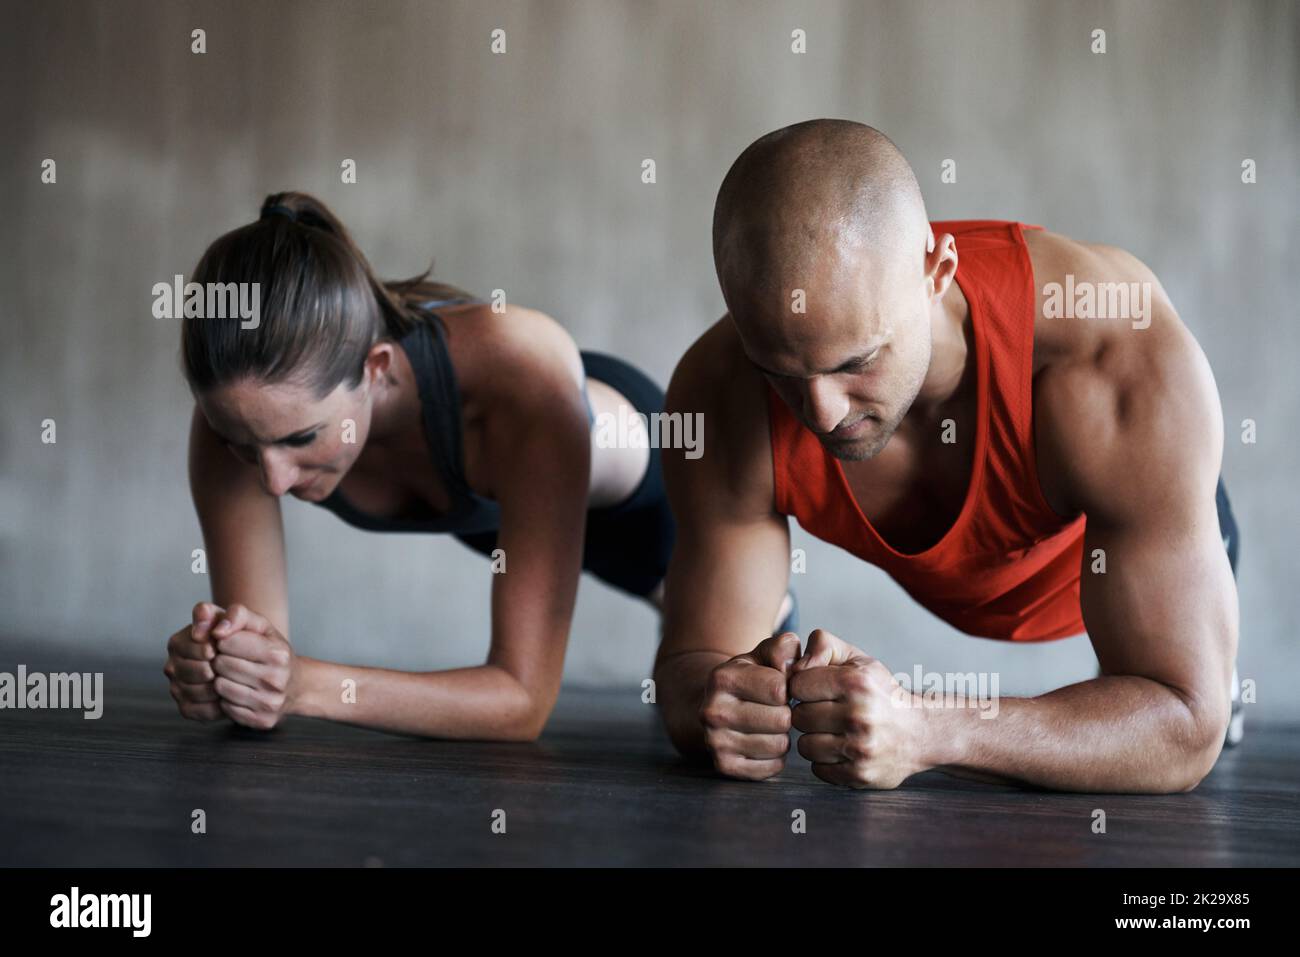 Drücke dich in die Fitness. Aufnahme eines Mannes und einer Frau, die im Fitnessstudio Plank-Übungen machen. Stockfoto